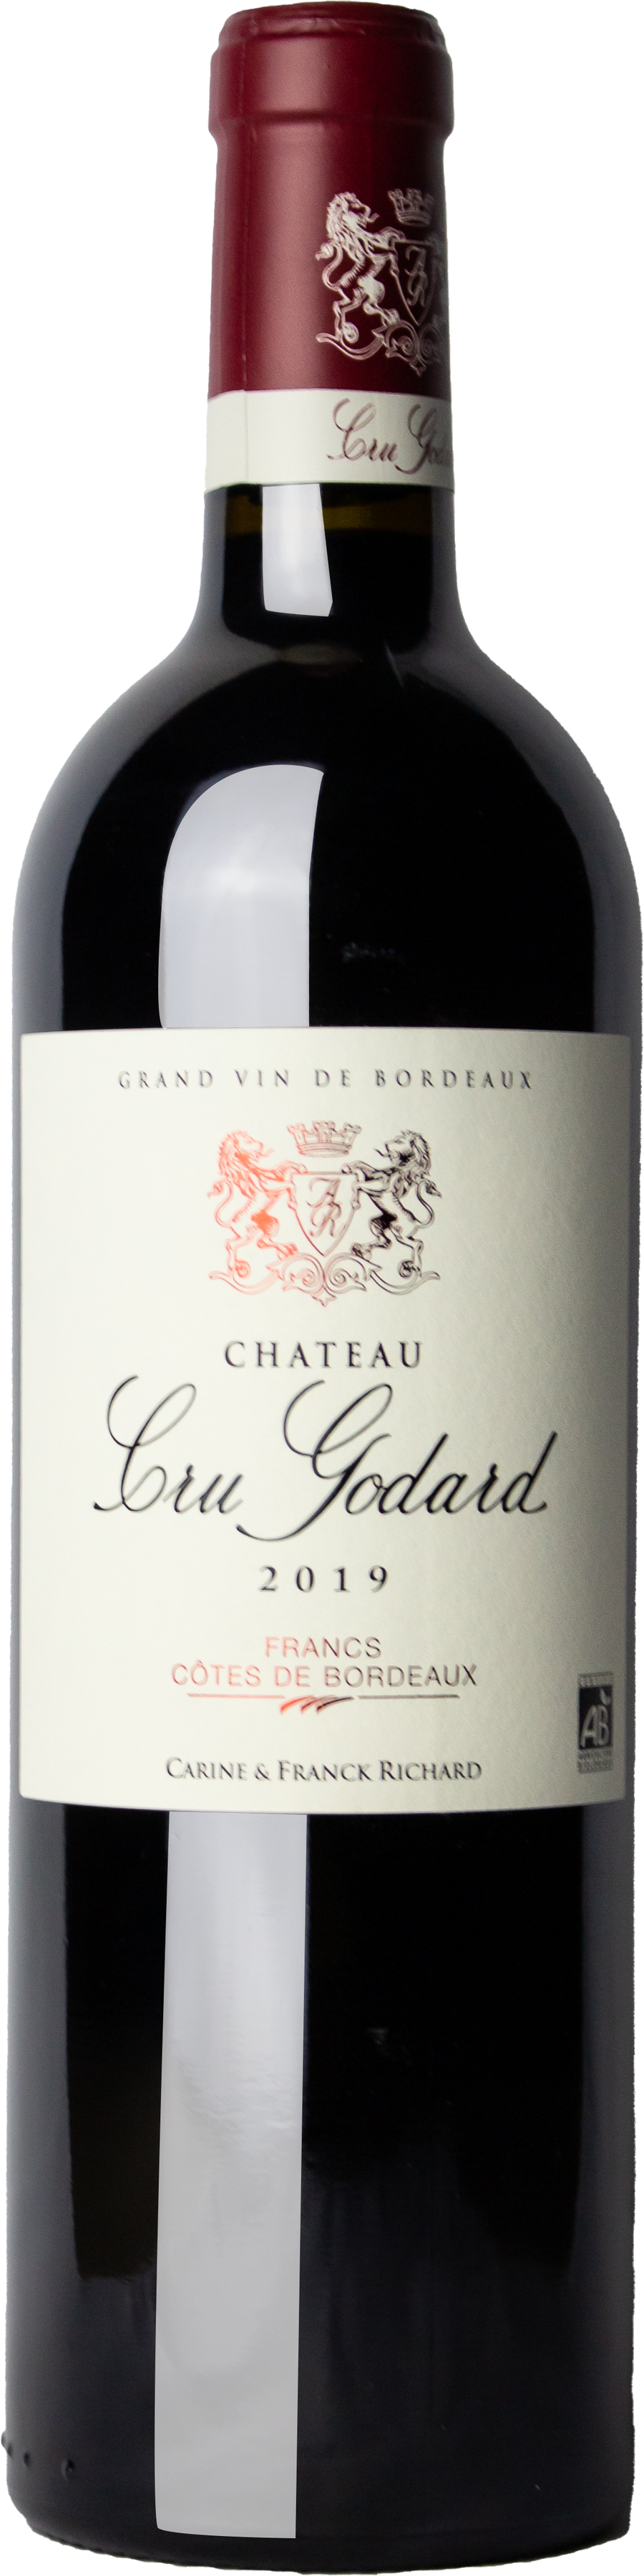 Chateau Cru Godard - Cotes de Bordeaux 2020